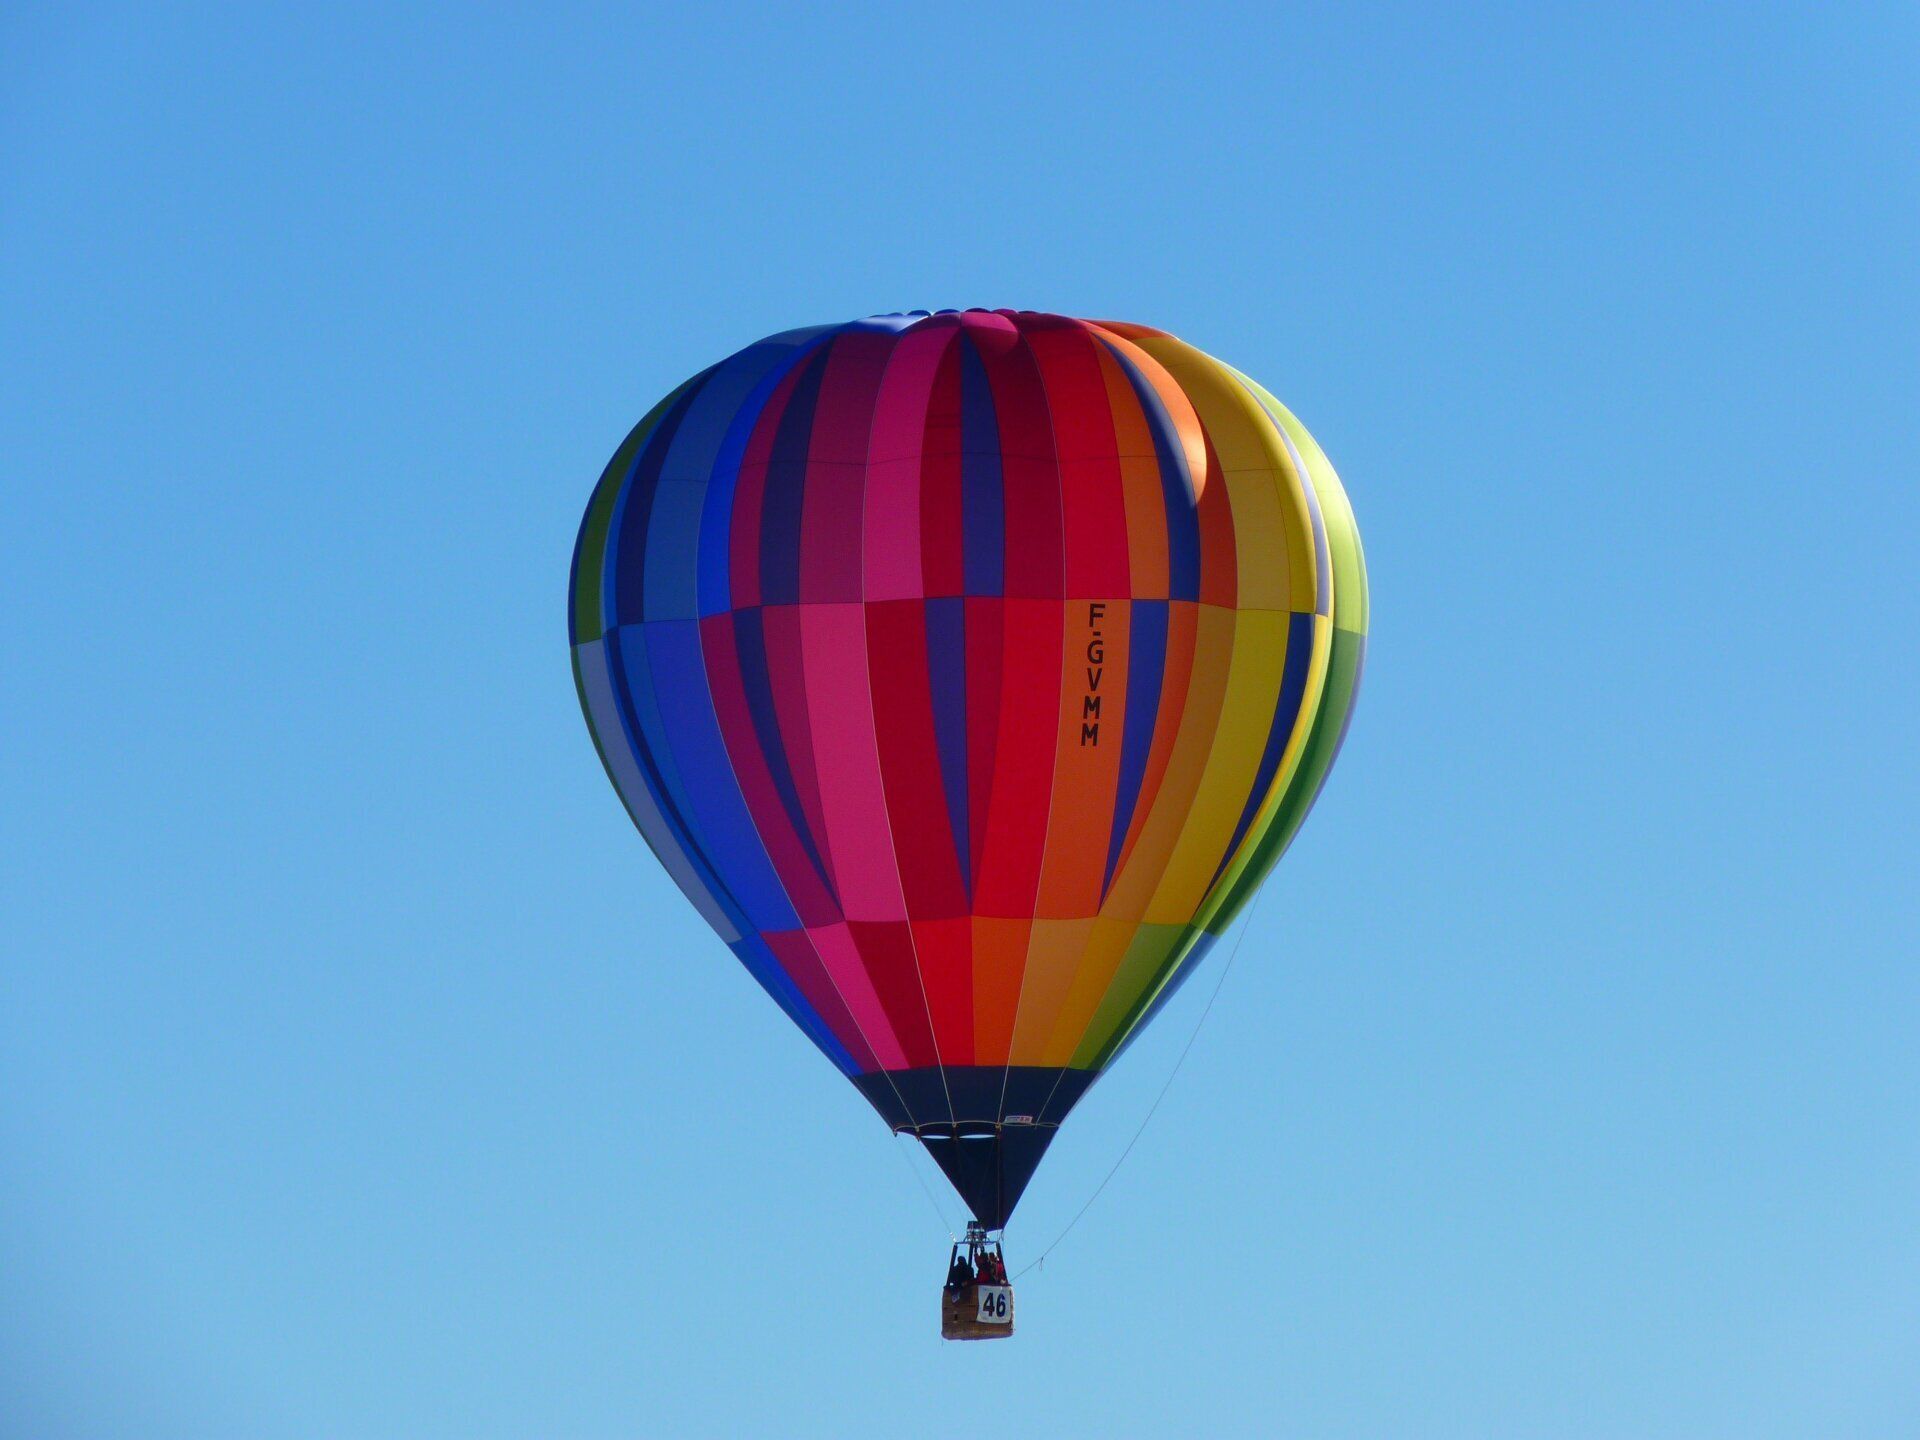 Big Balloon tour in air